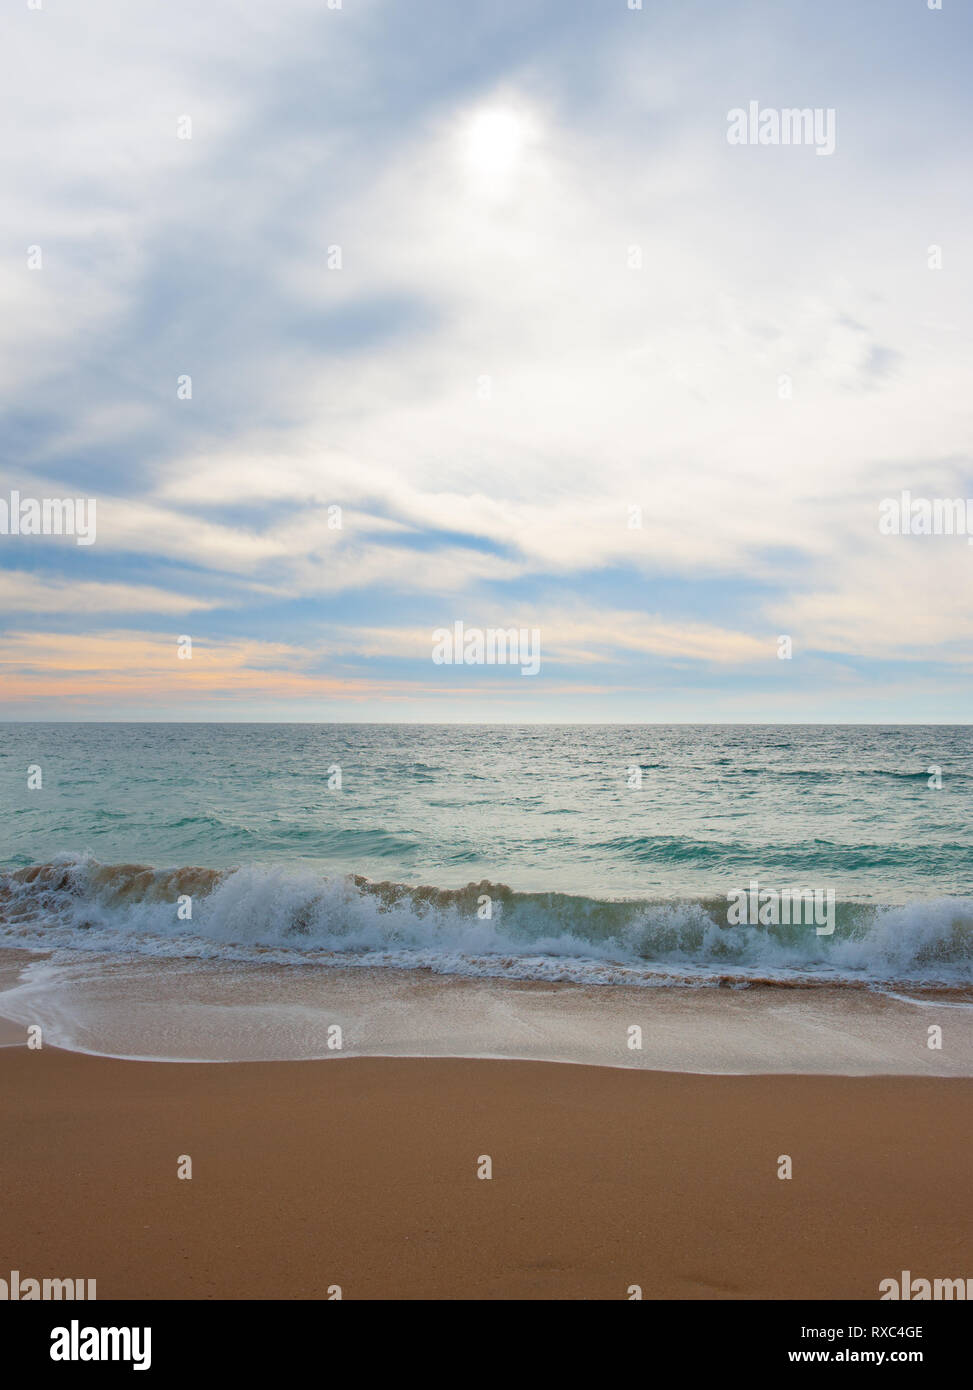 Seascape pacífica con las olas lamiendo suavemente a la orilla del mar en la arena. El sol se filtra a través de la luz acuosa nubes que cubren el cielo Foto de stock